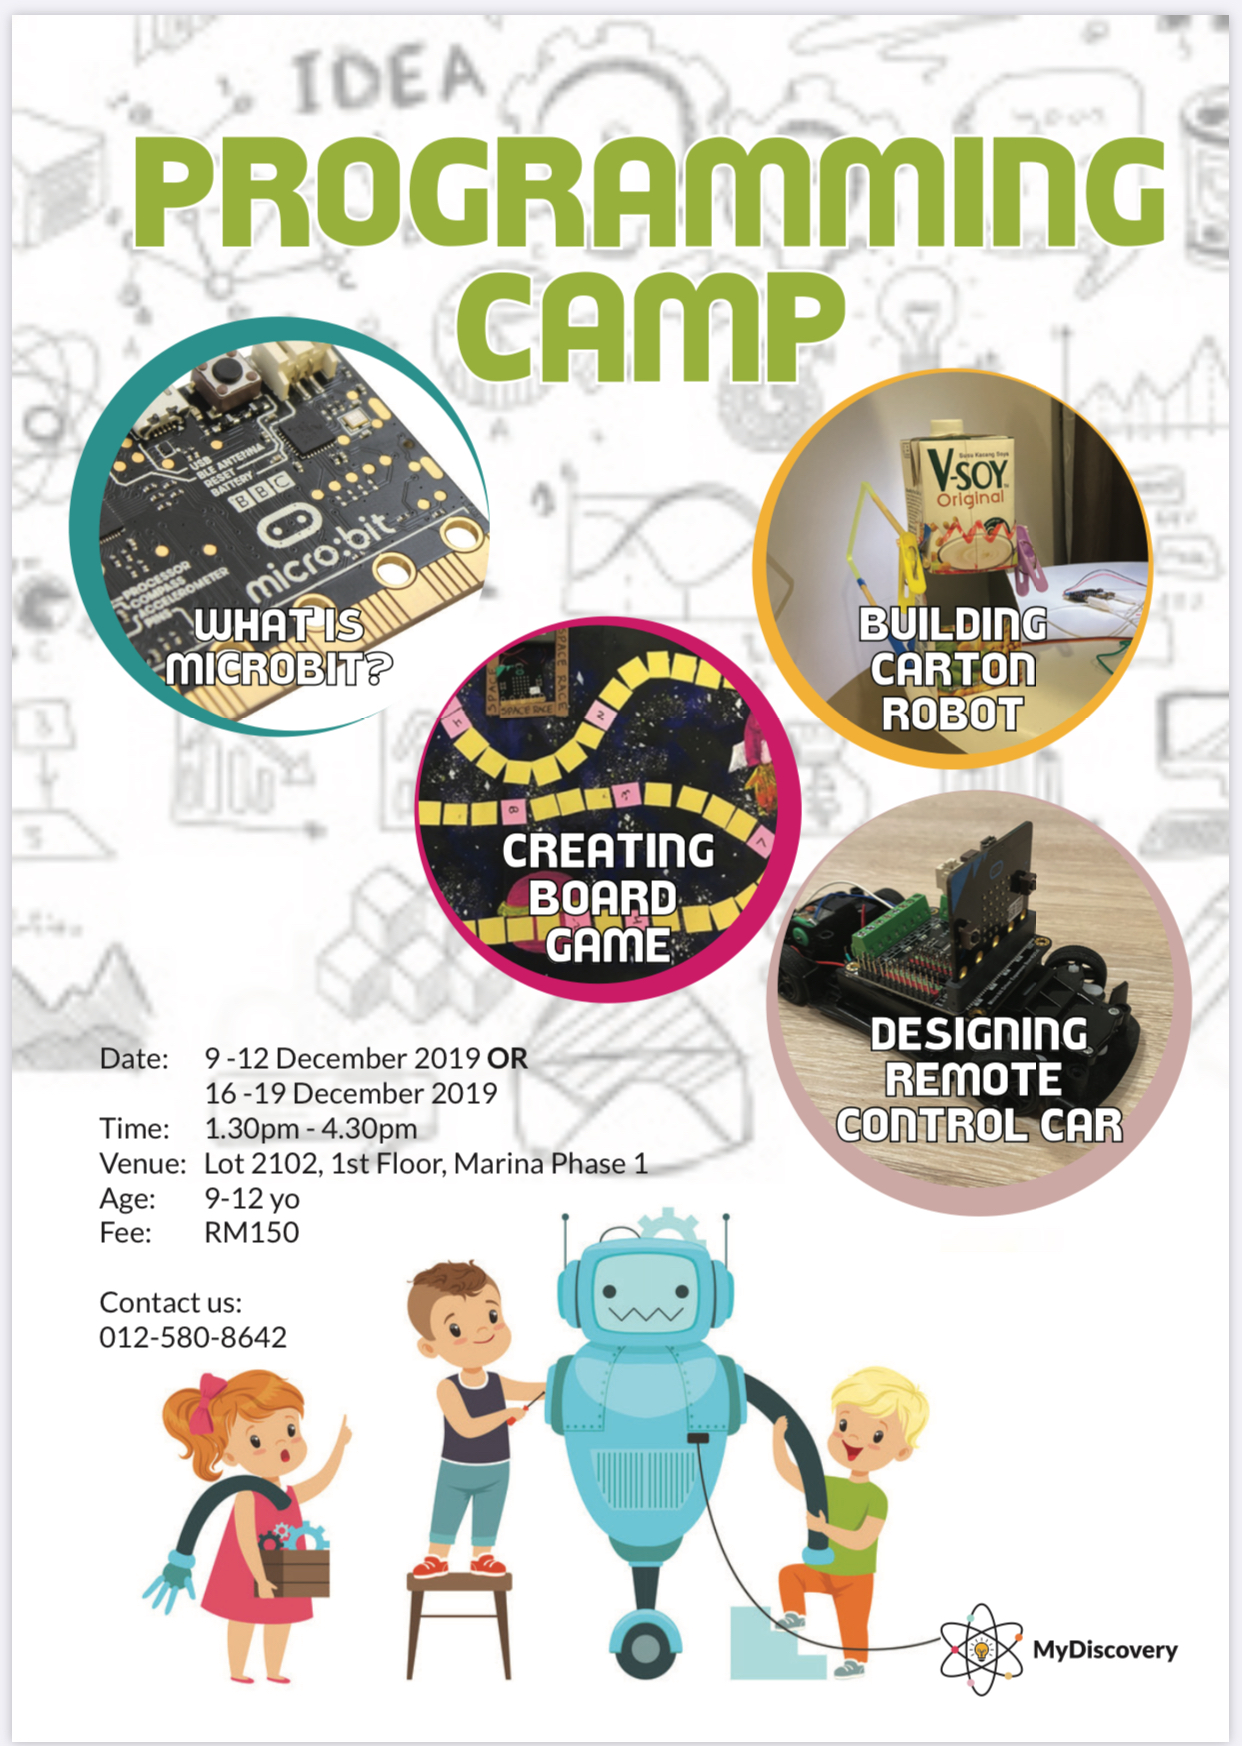 Programming Camp On 9-12 December 2019 or 16-19 December 2019